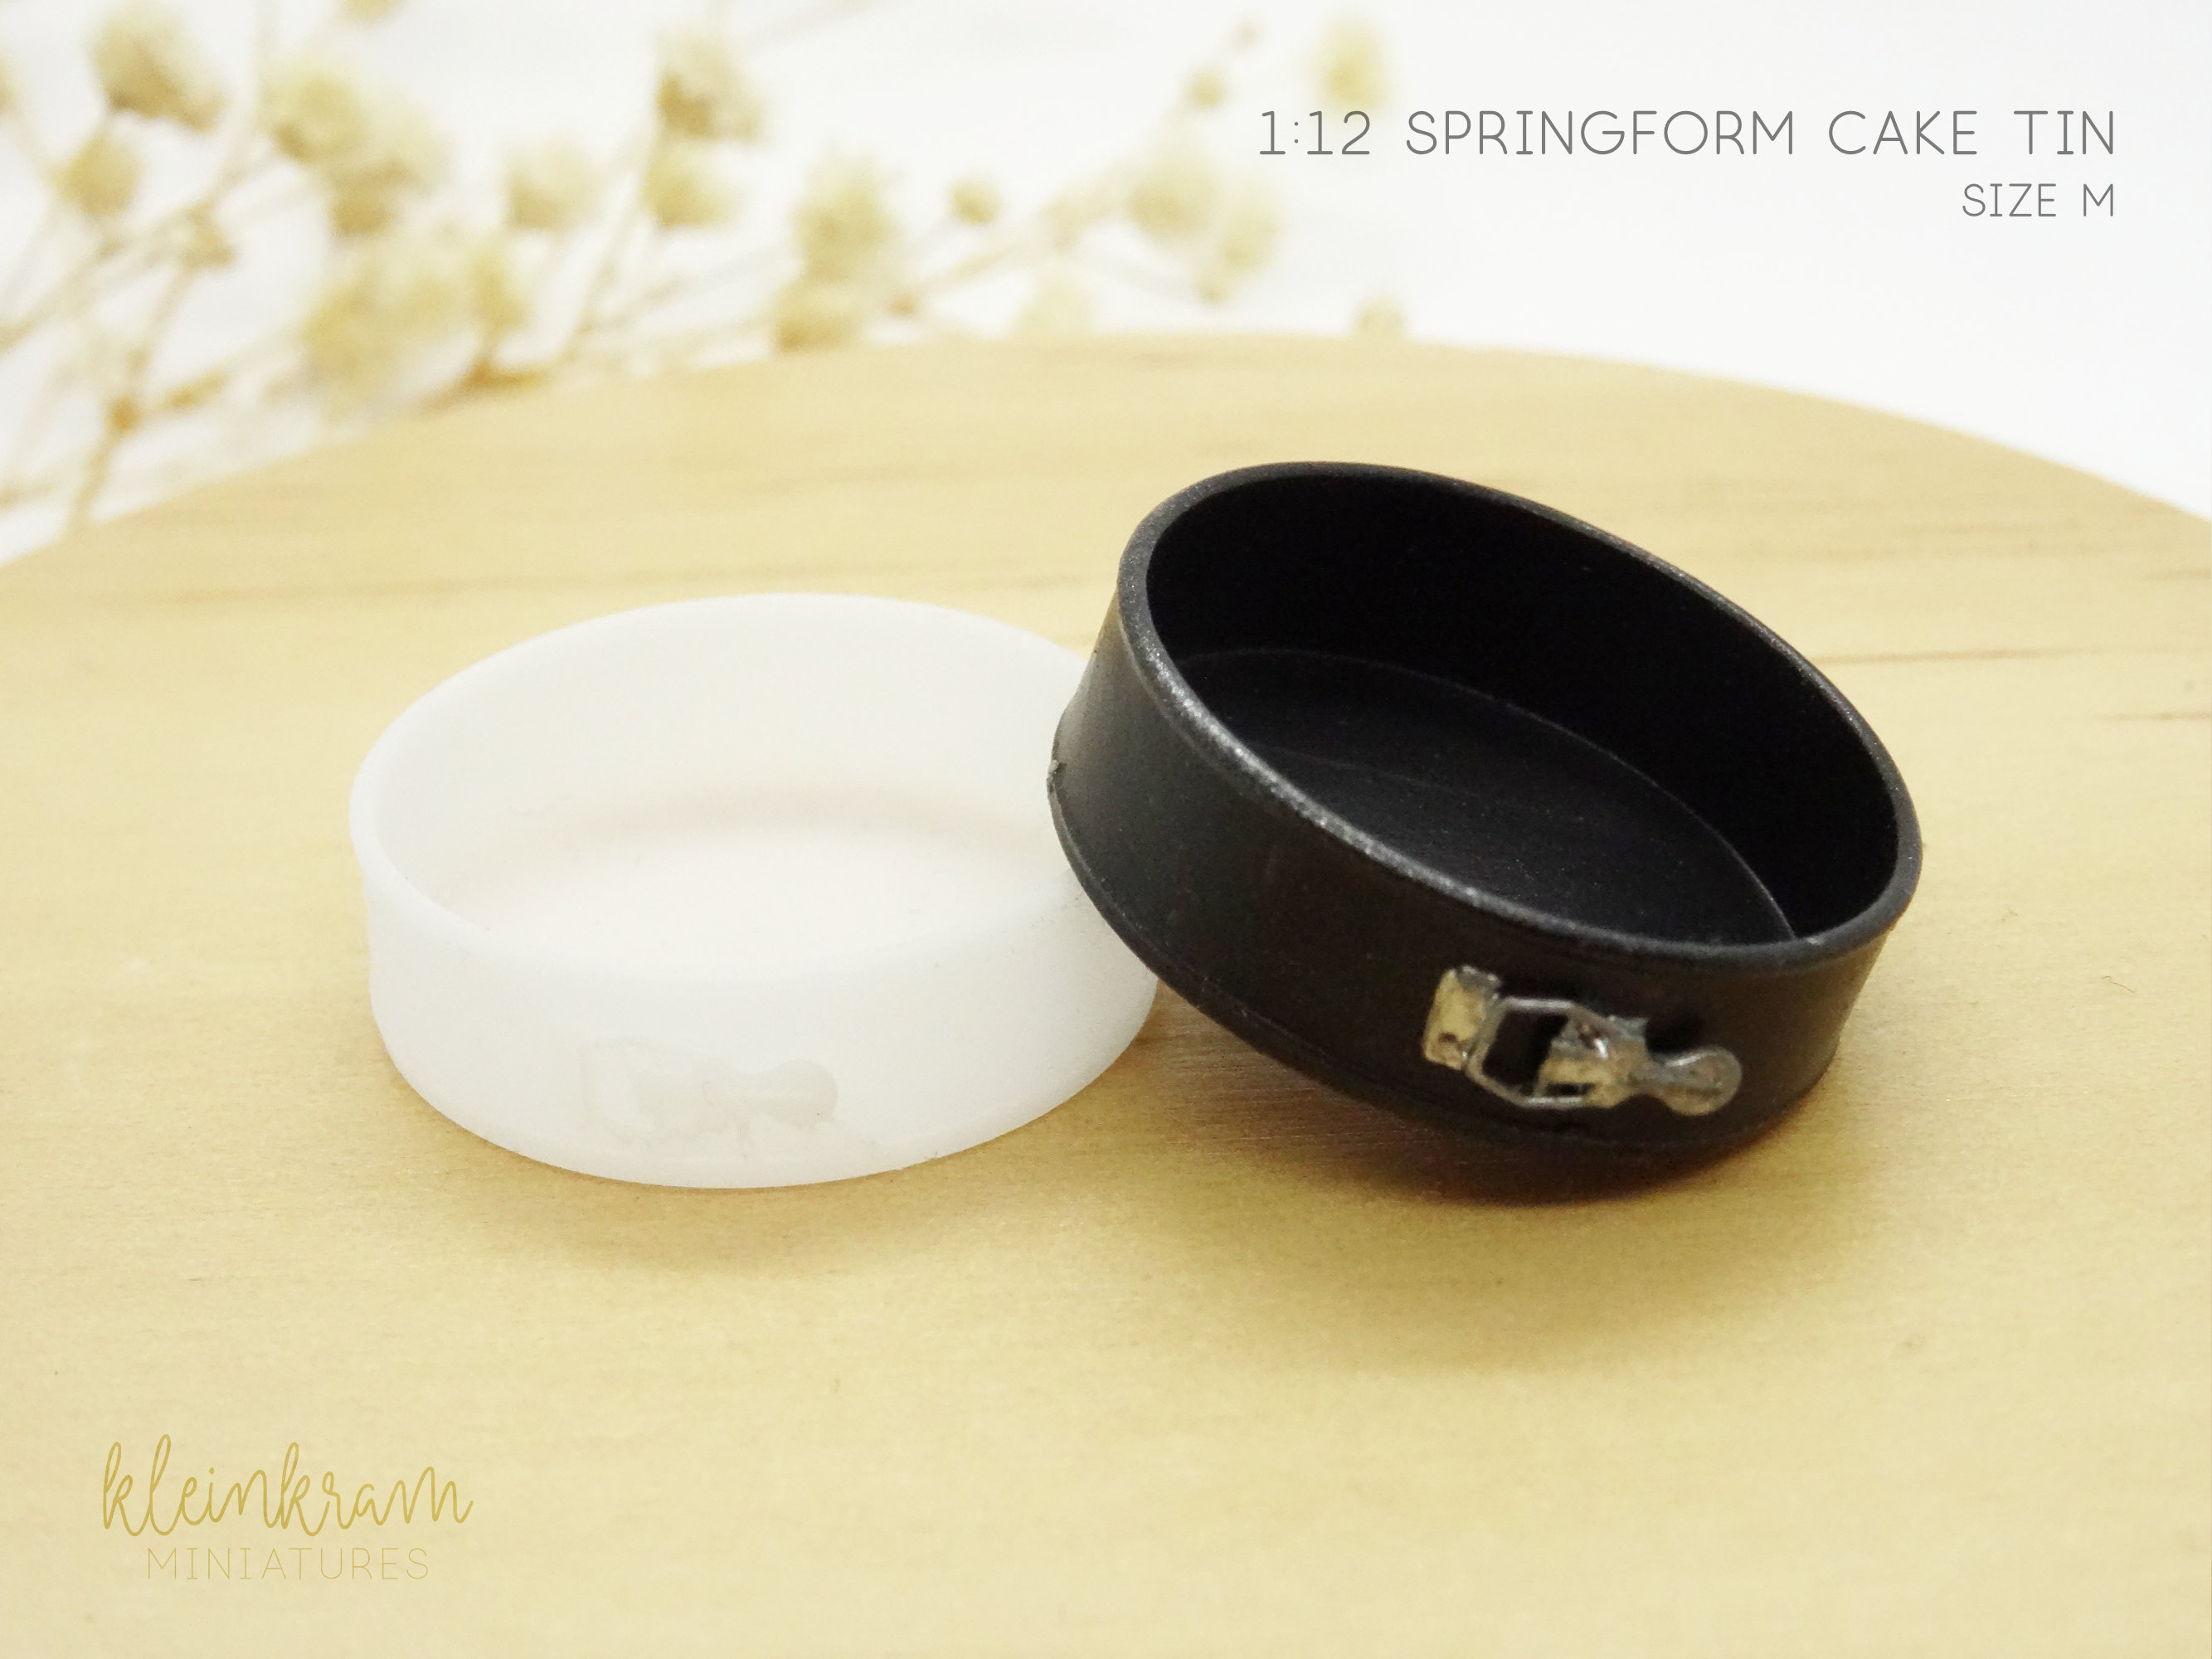 Springform Cake Tin - 1/12 Miniature